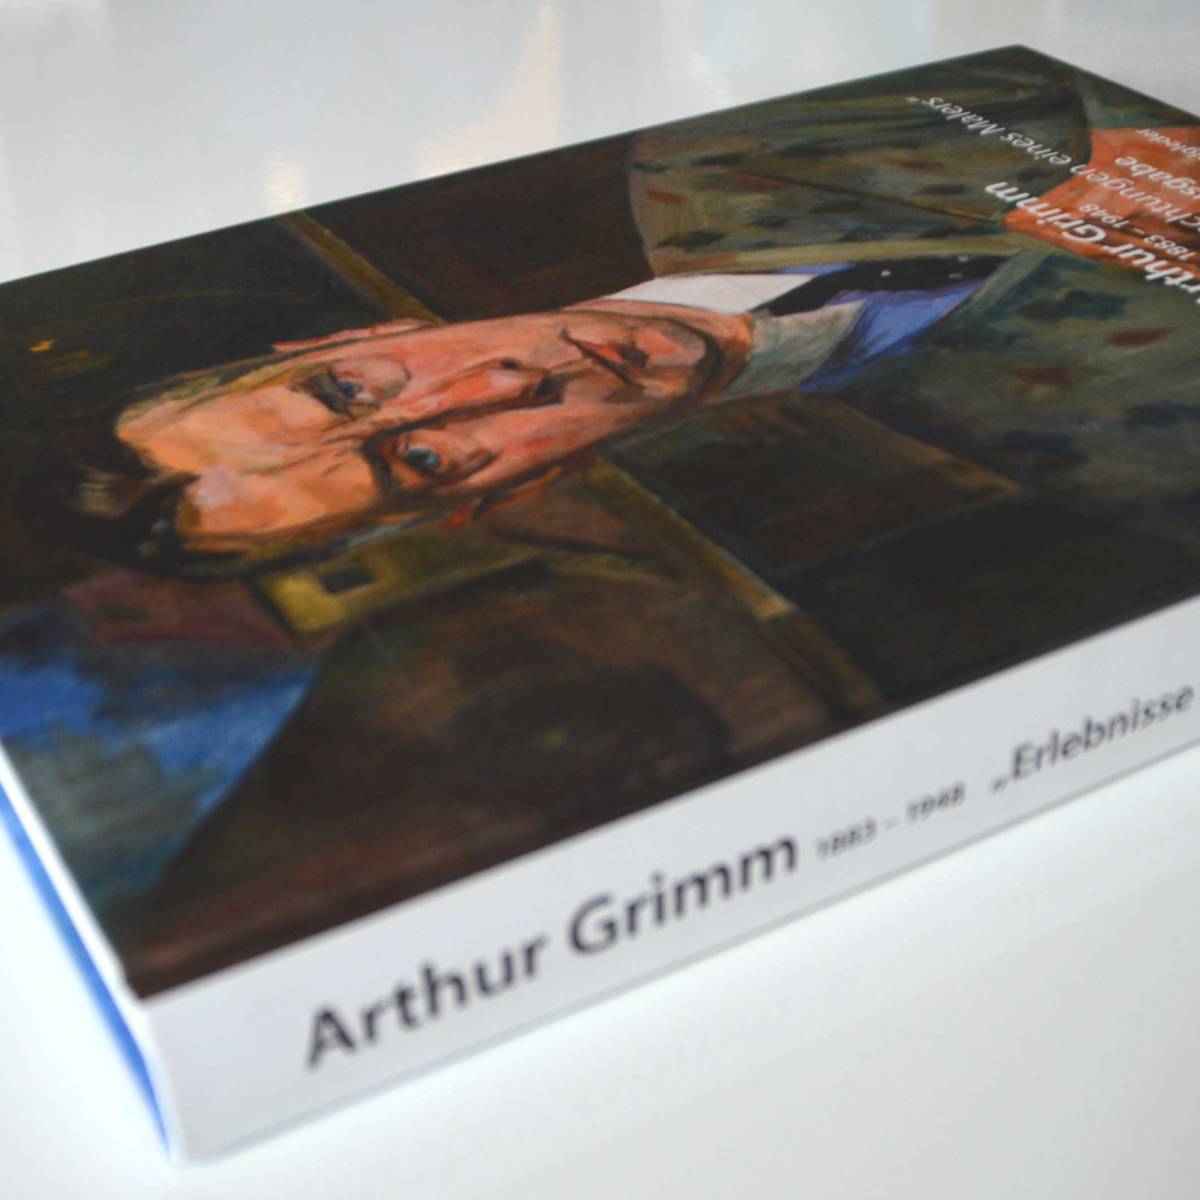 Arthur Grimm